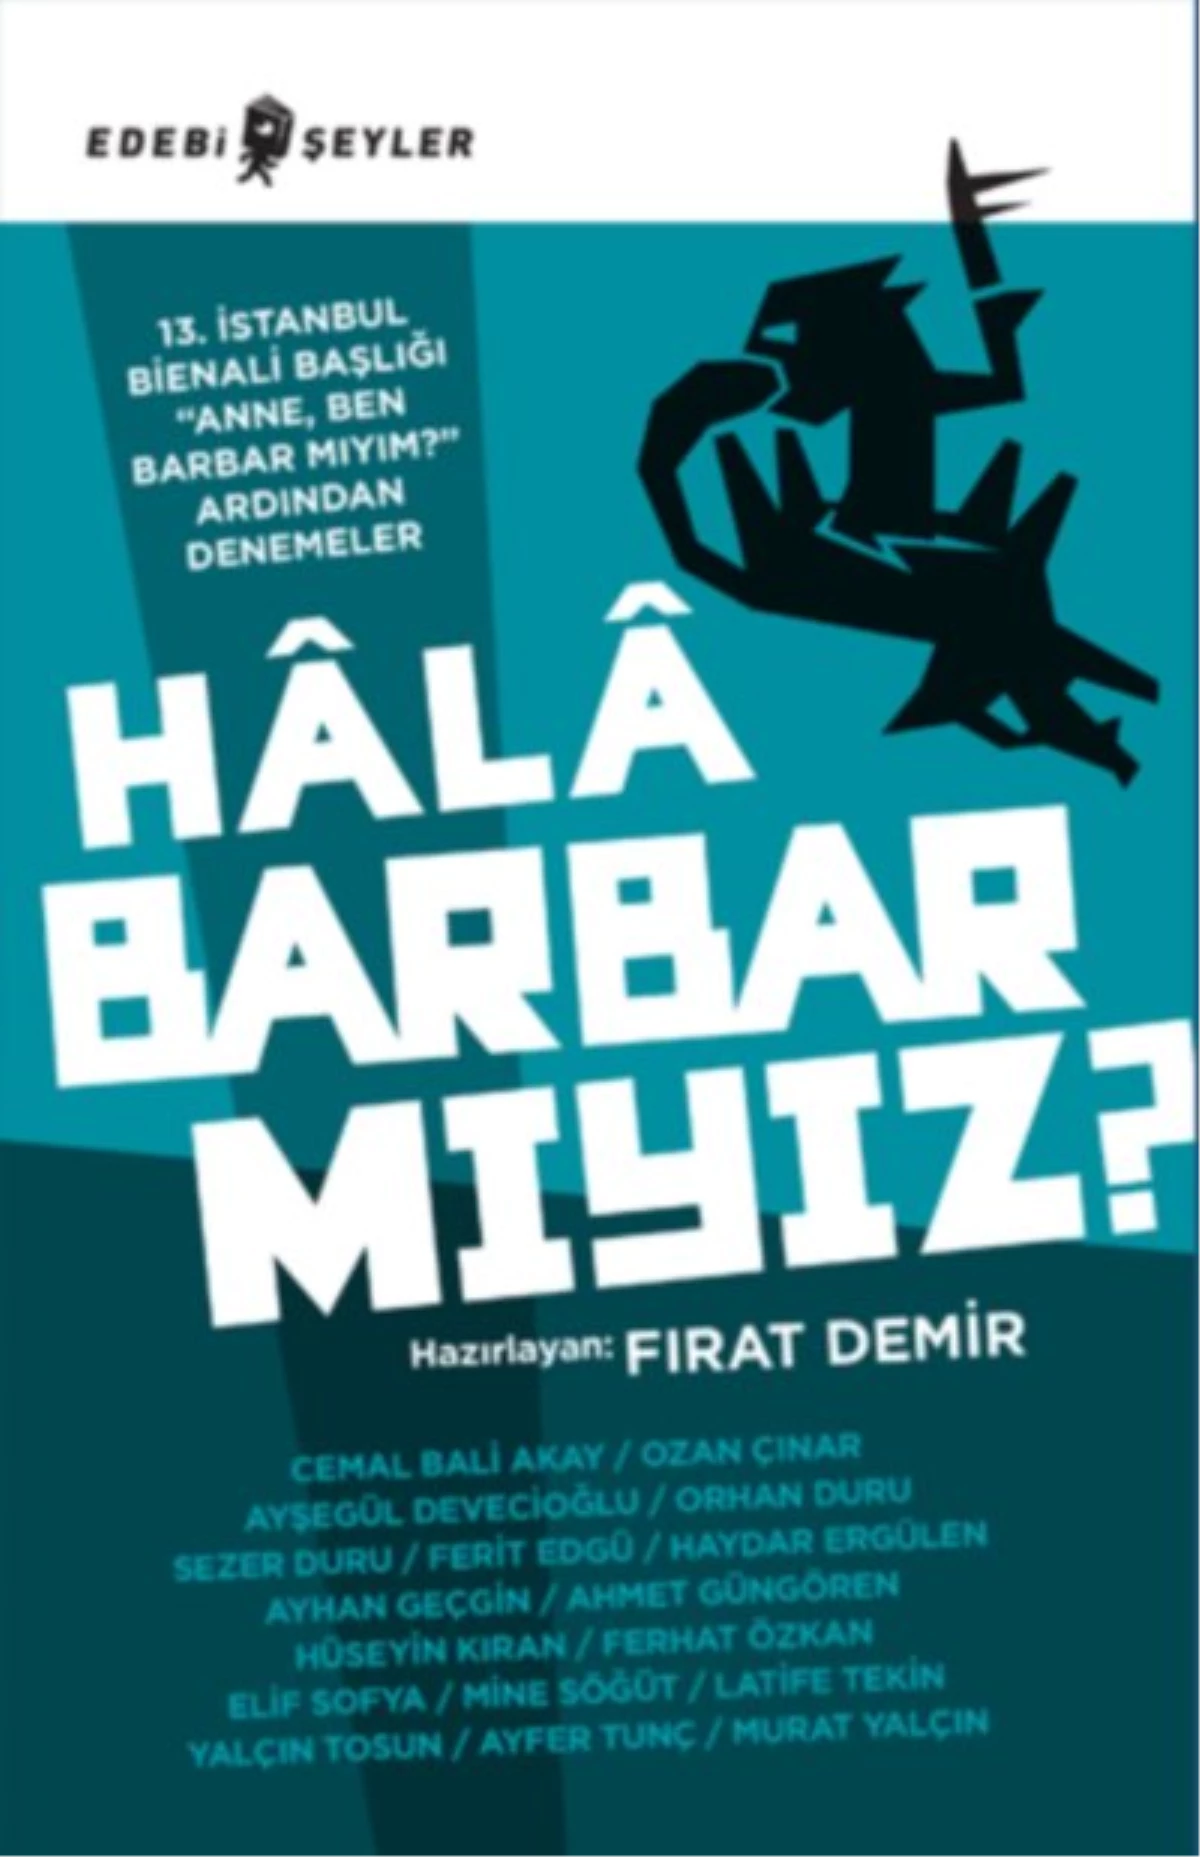 Fırat Demir\'in Kitabı "Hâlâ Barbar Mıyız?" Yayımlandı